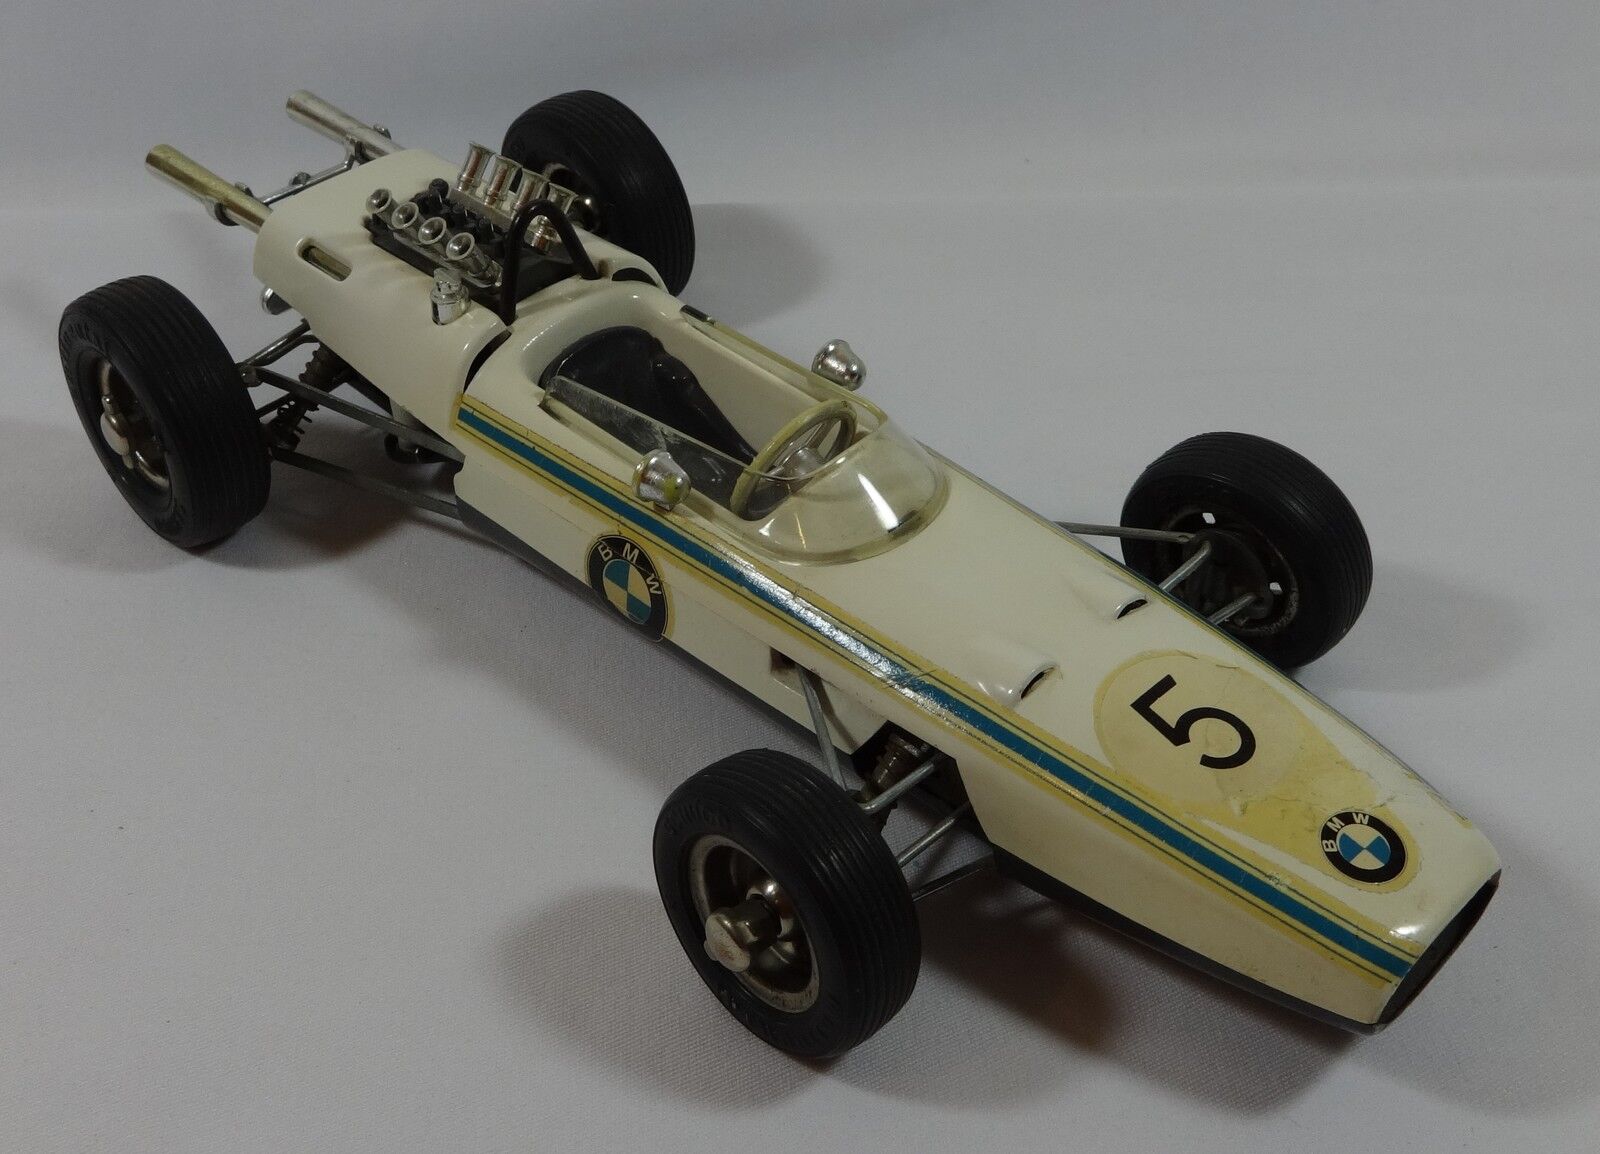 Schuco #5 BMW Formel 2 1072 1:16 Germany Wind-Up Metal Toy Race Car Vintage 